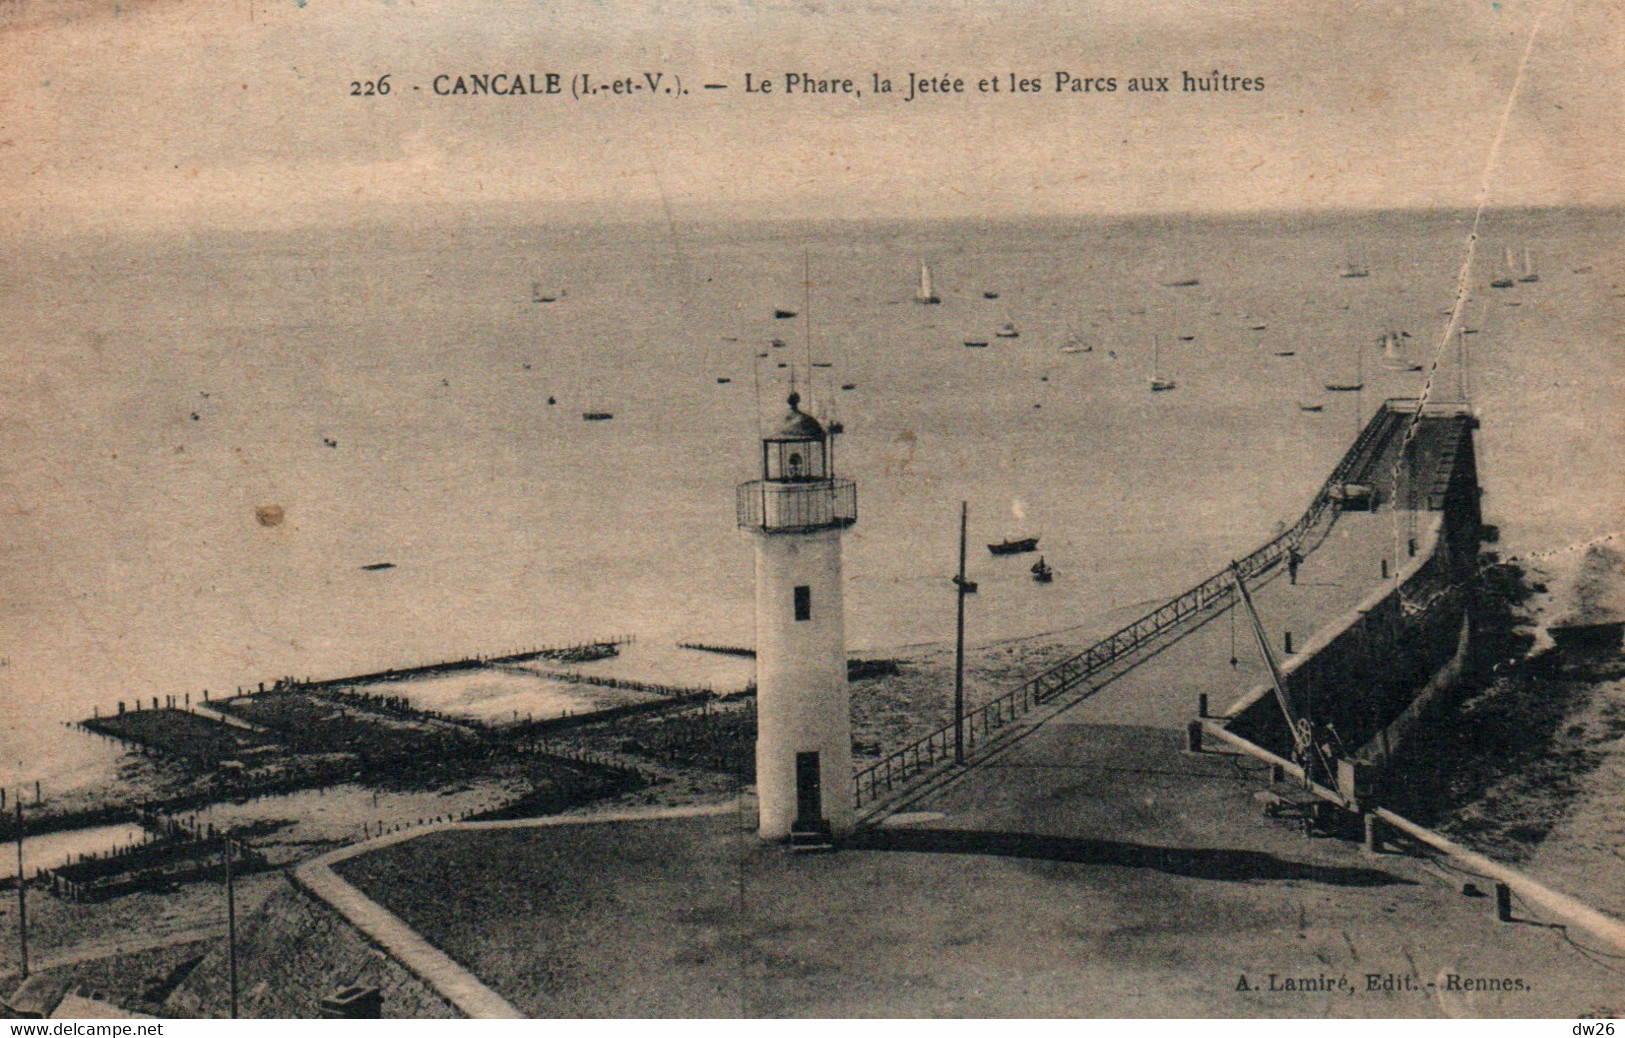 Cancale (Ile-et-Vilaine) Le Phare, La Jetée Et Les Parcs à Huîtres - Edition Lamire, Carte N° 226 - Fari